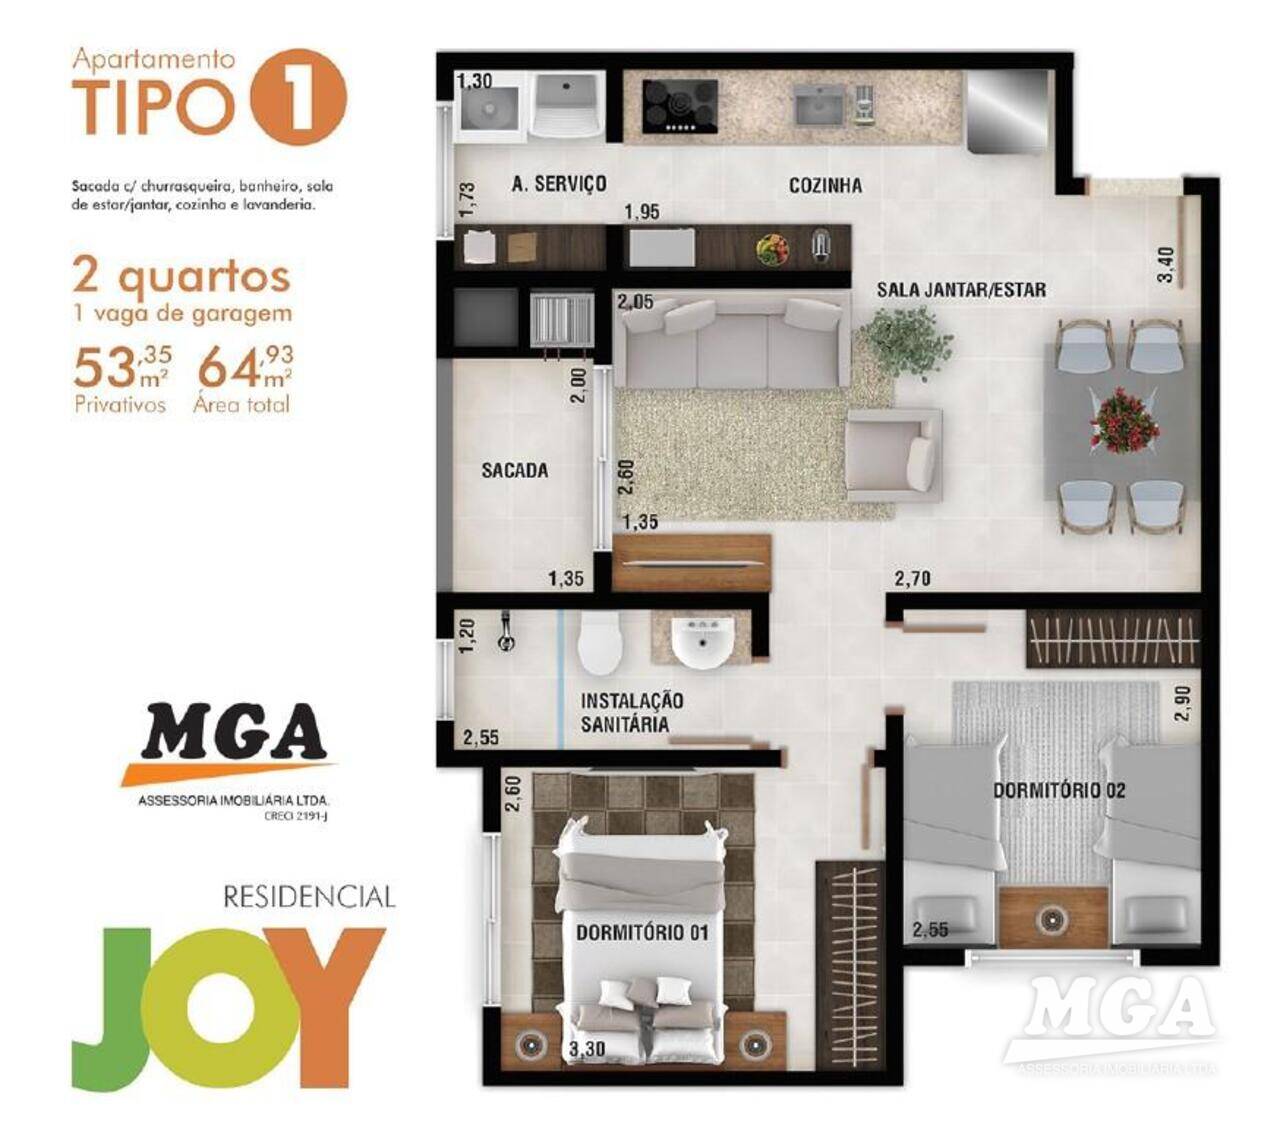 Apartamento Residencial Joy, Foz do Iguaçu - PR